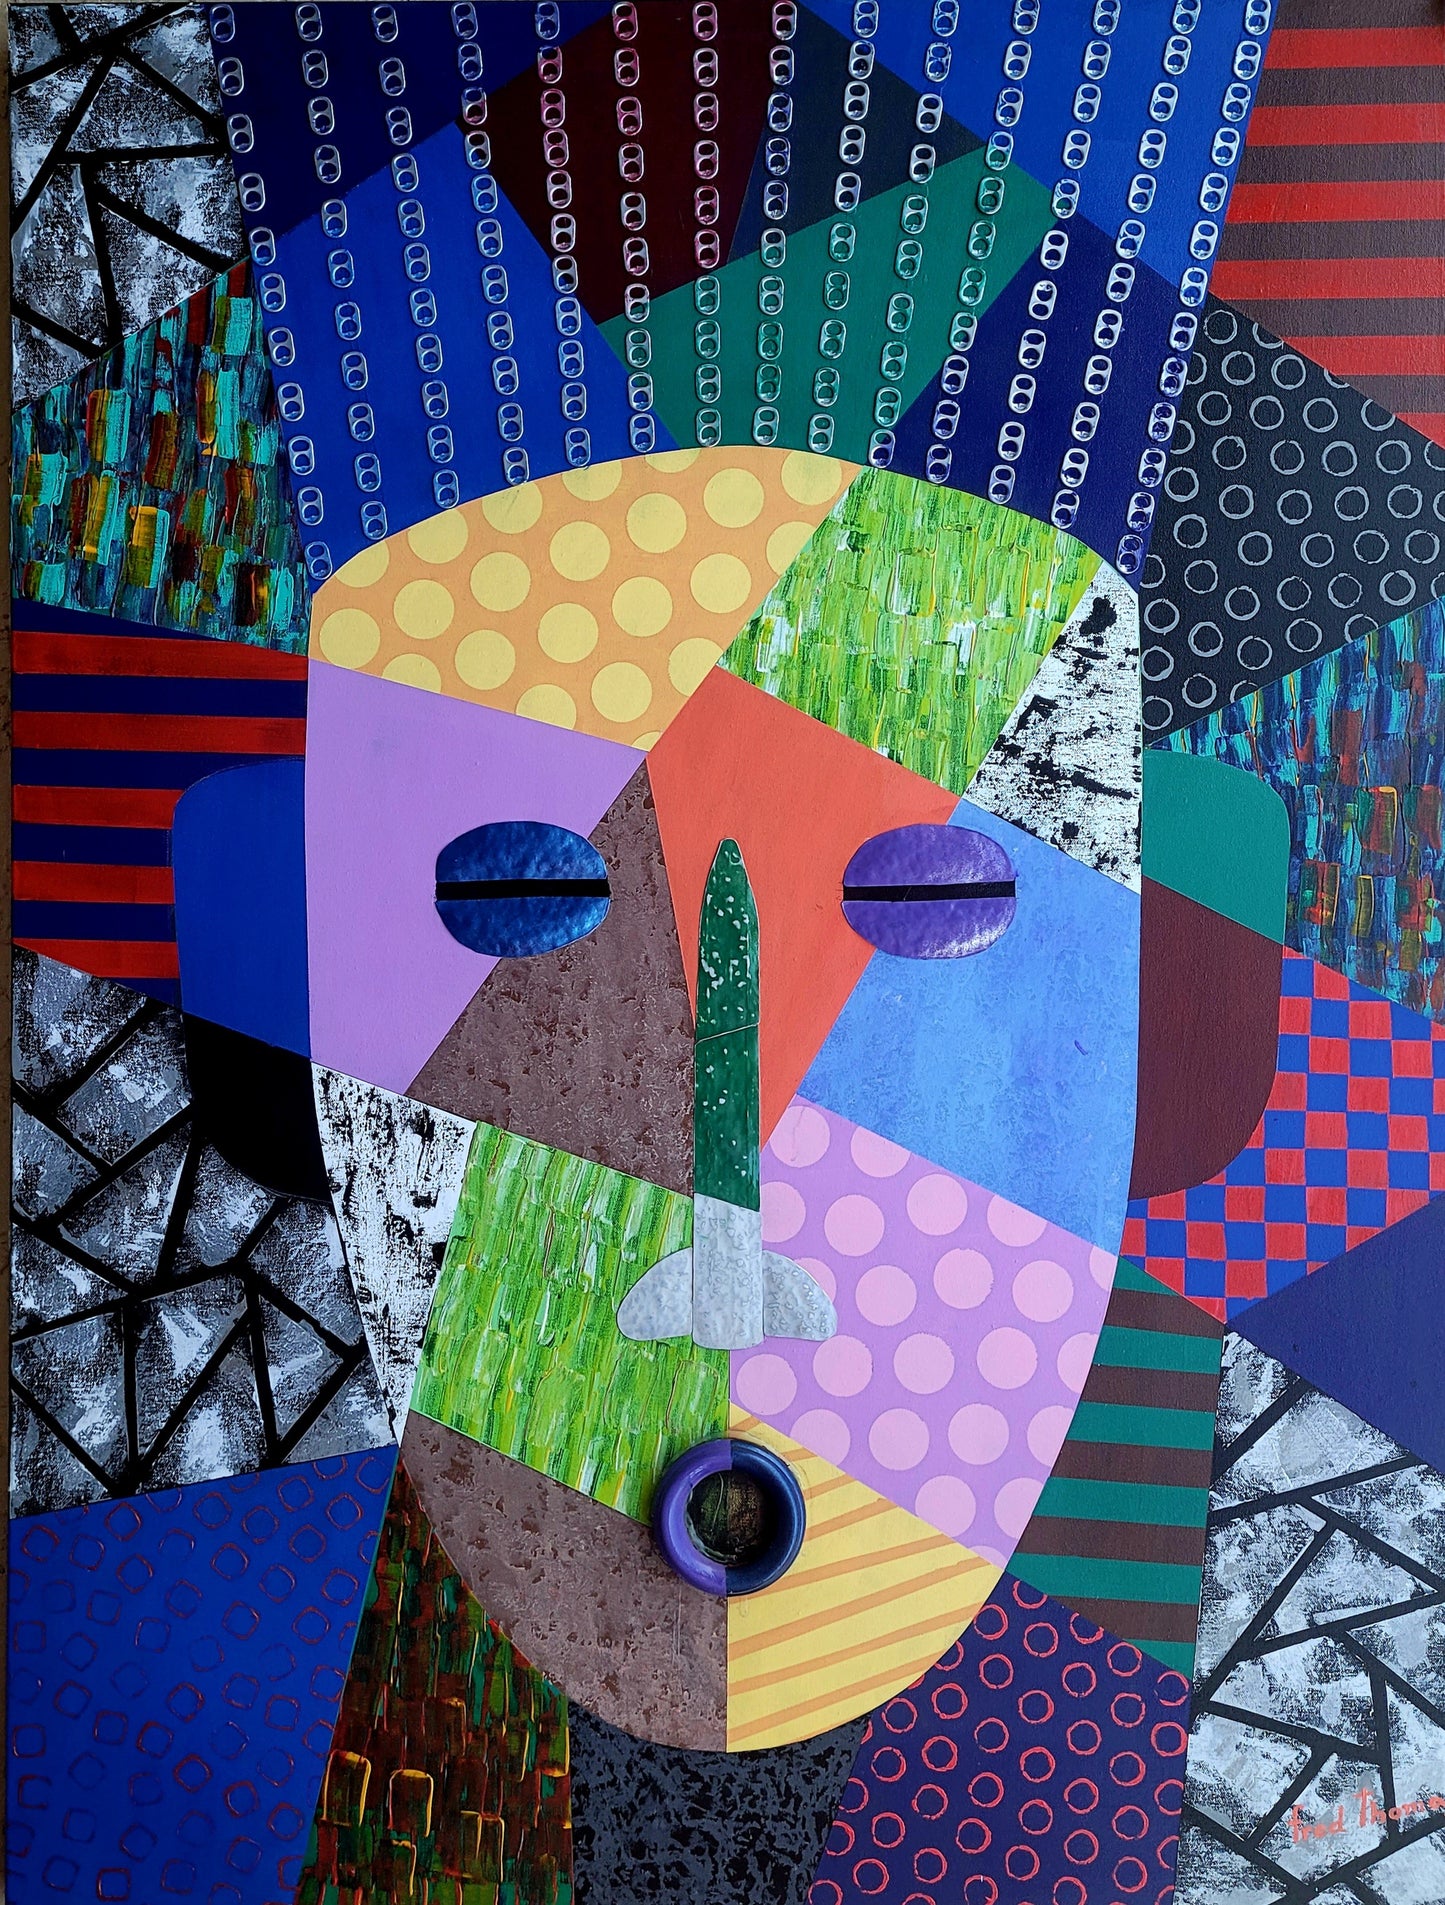 Fred Thomas 48 "x 36" Masque africain avec une touche Pop Art Techniques mixtes sur toile #7CFT